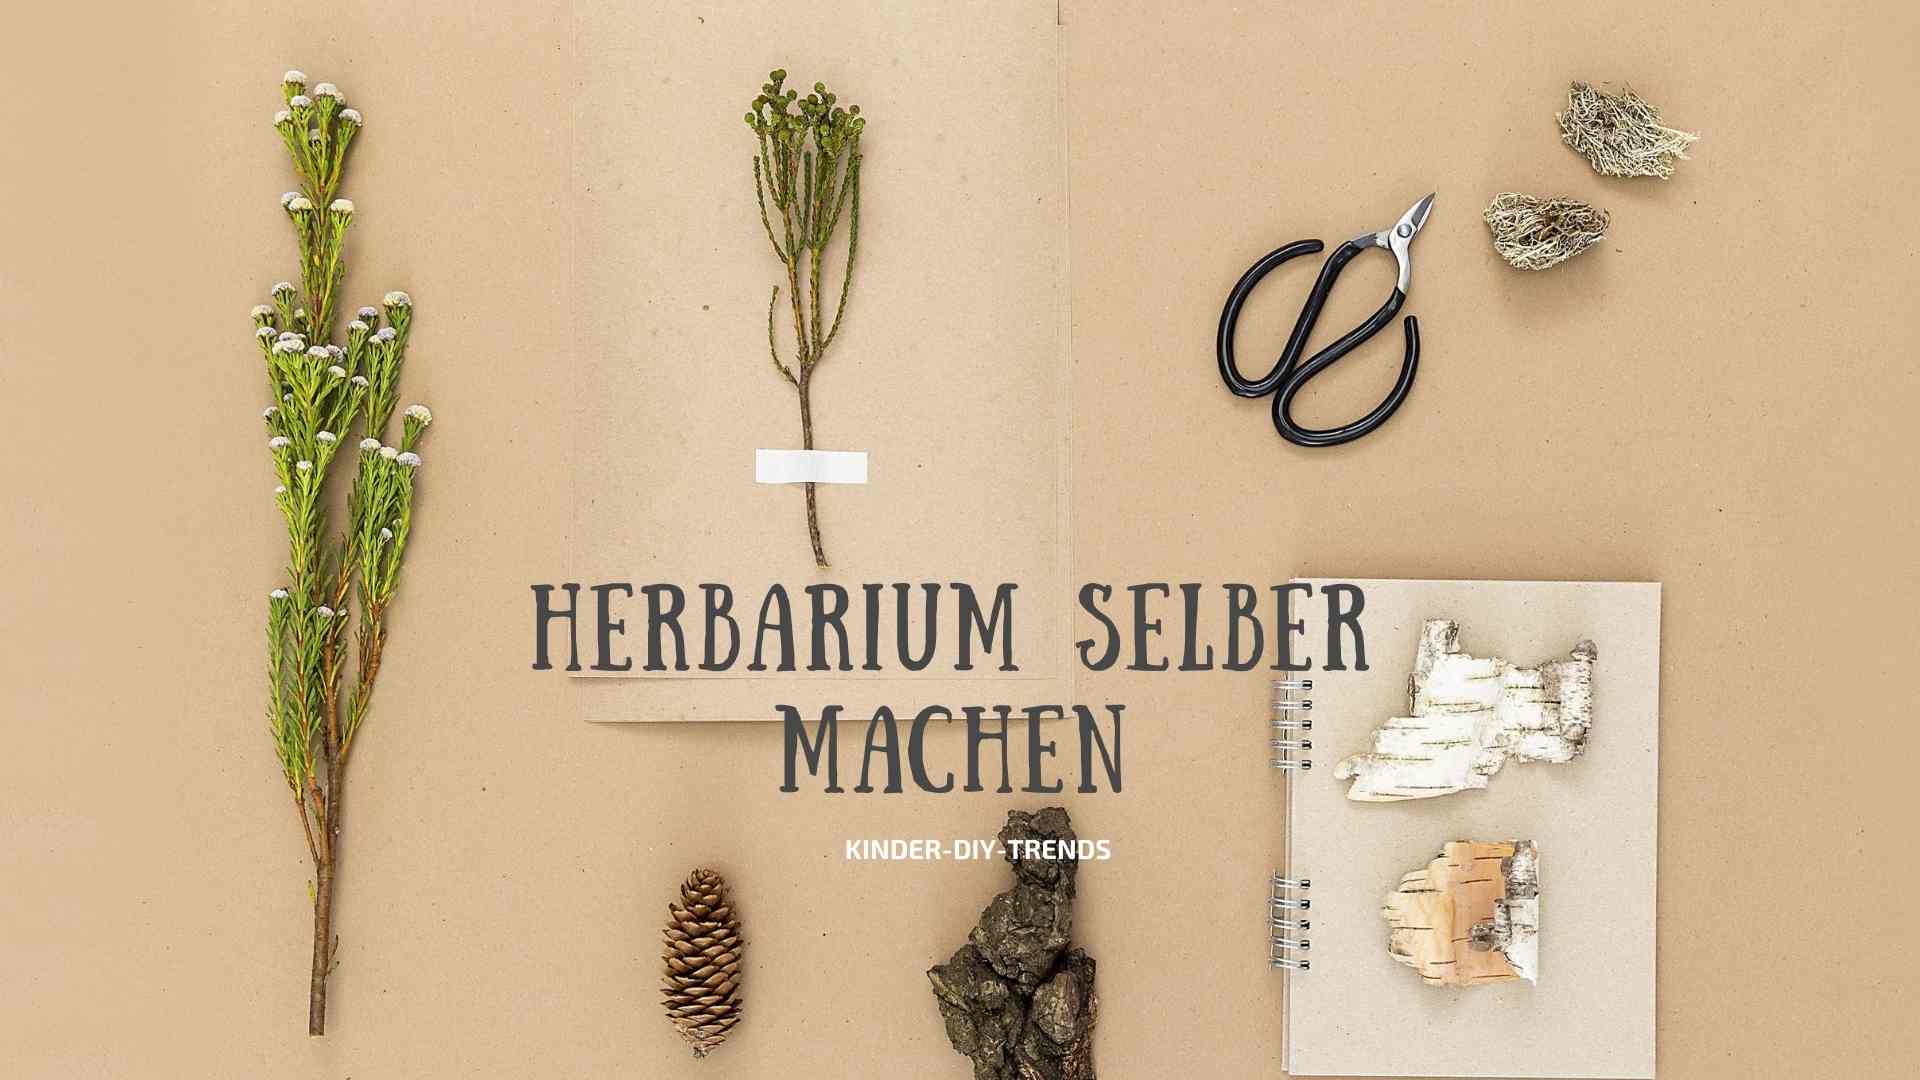 Herbarium selber machen. So legt man ein Herbarium an. Mit Vorlagen und Anleitung.